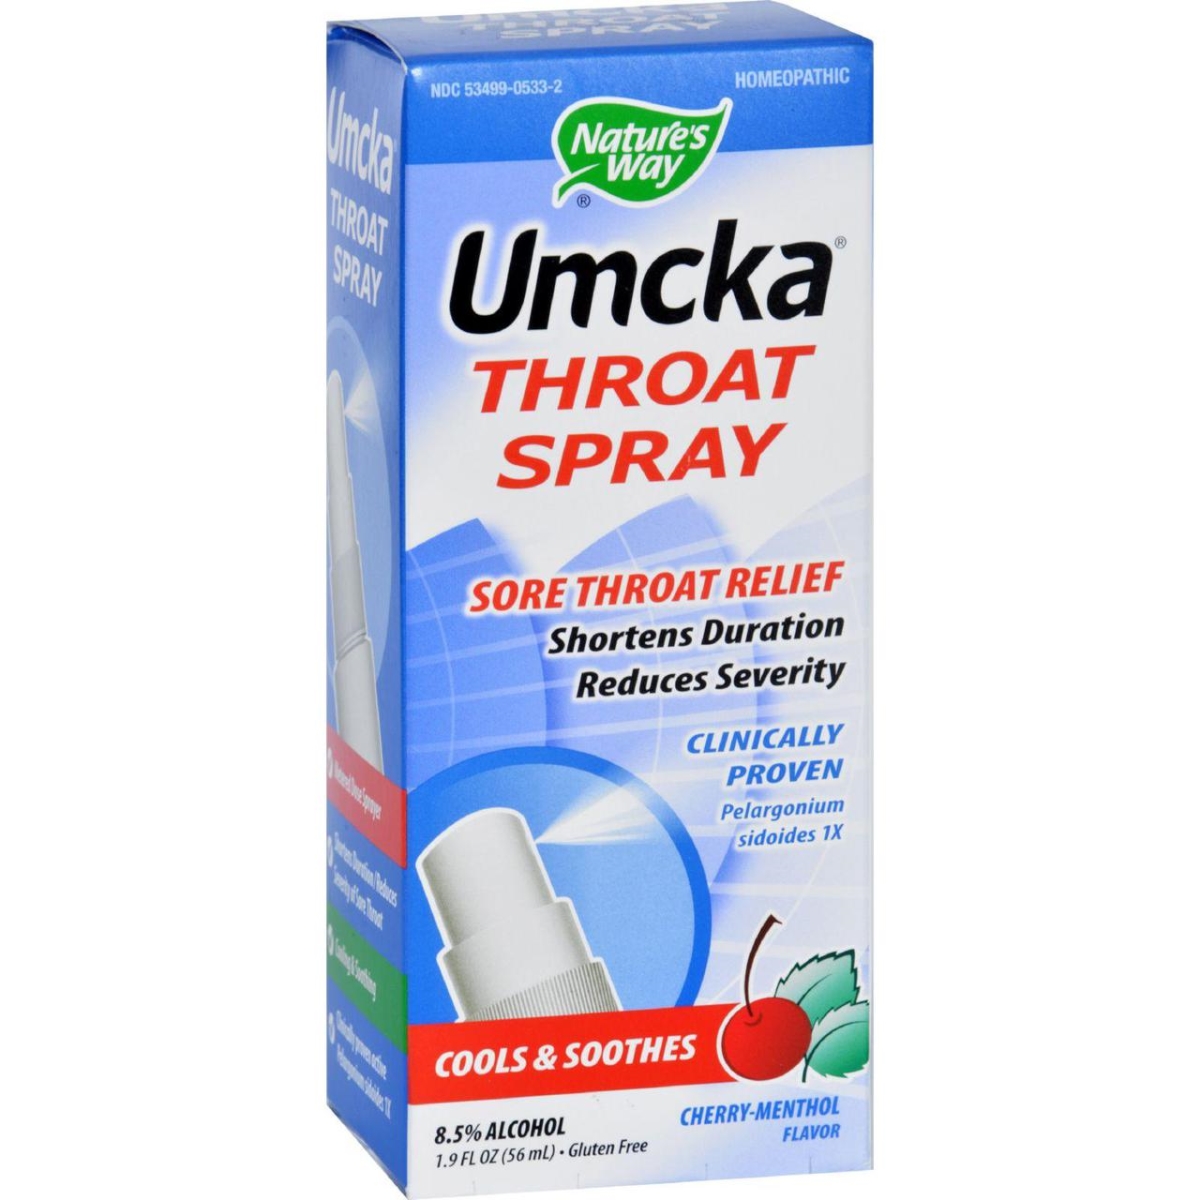 Hg1629880 1.9 Oz Umcka Throat Spray - Cherry